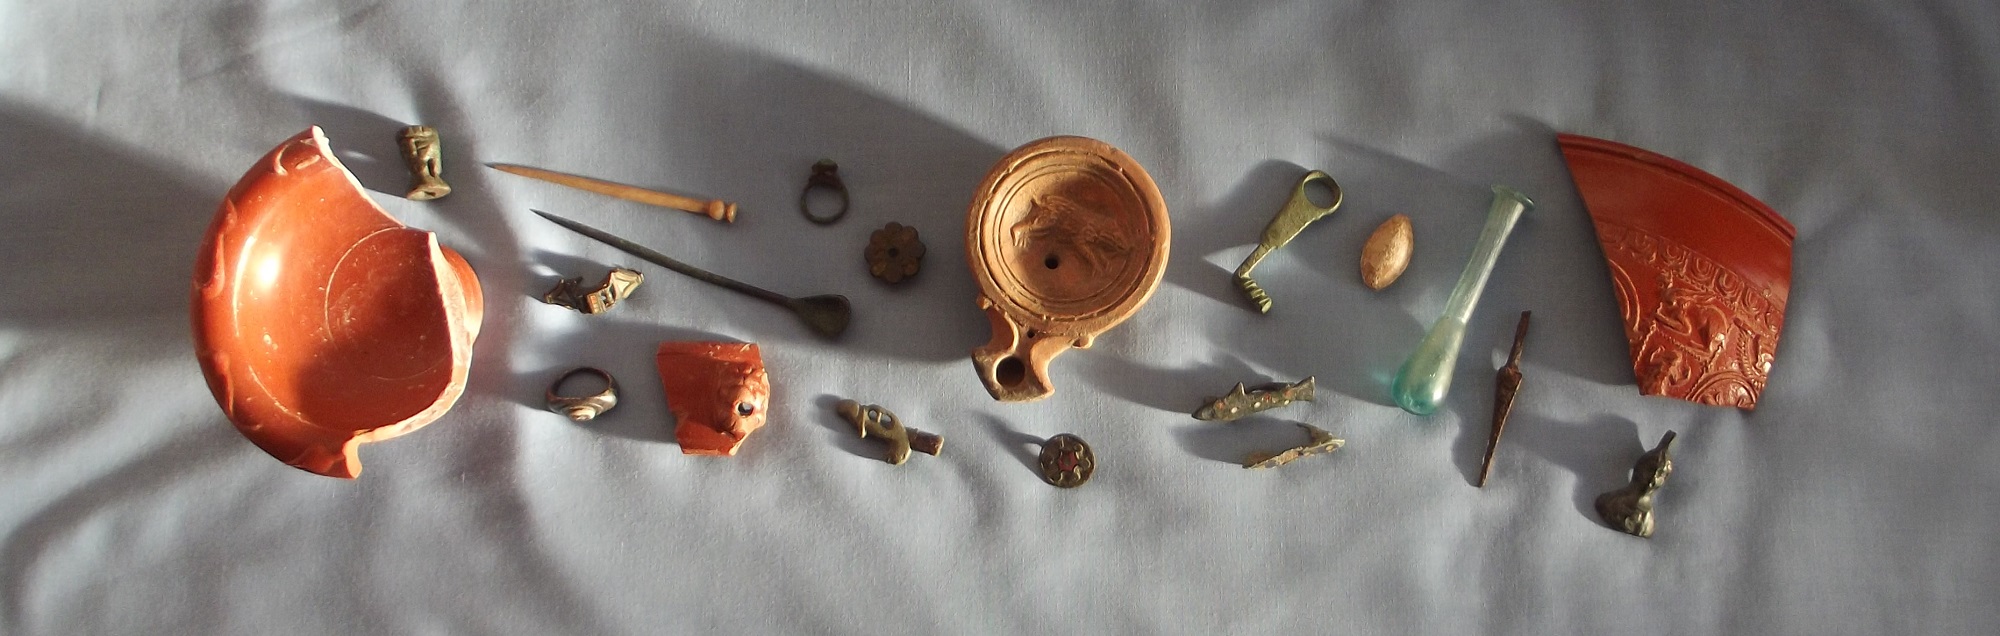 Roman Artefacts